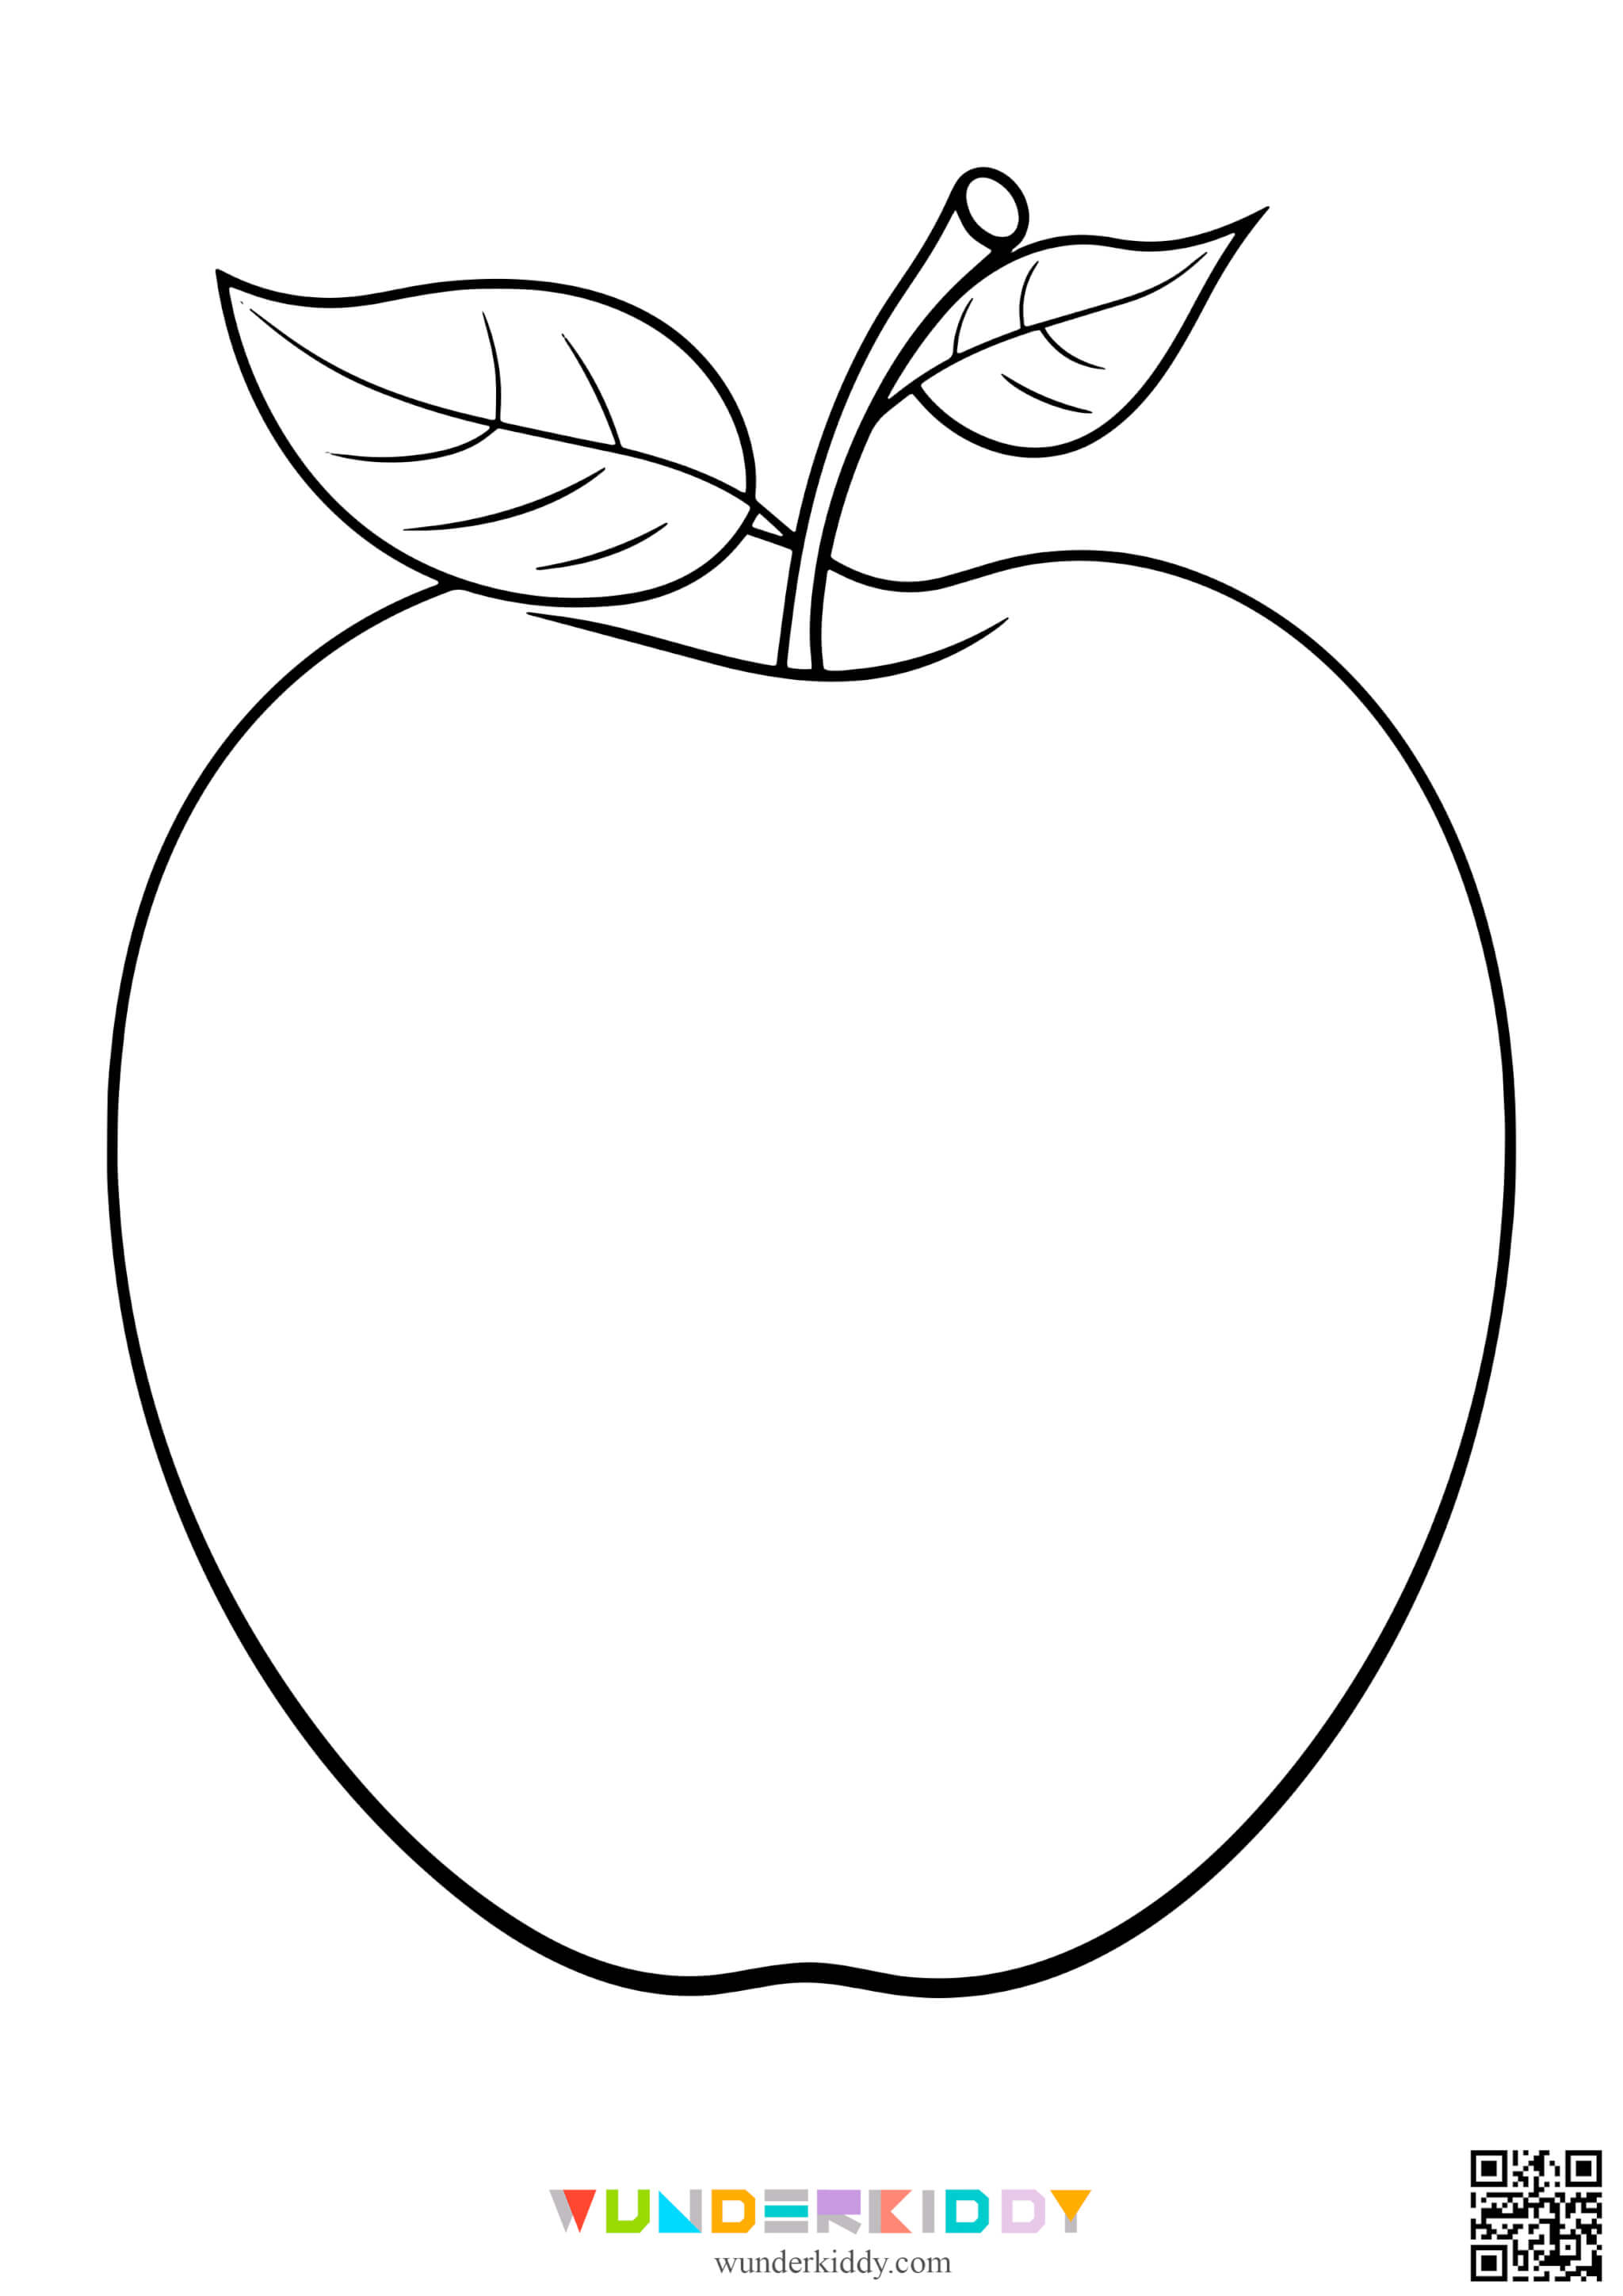 Шаблоны яблок для творчества - Изображение 6